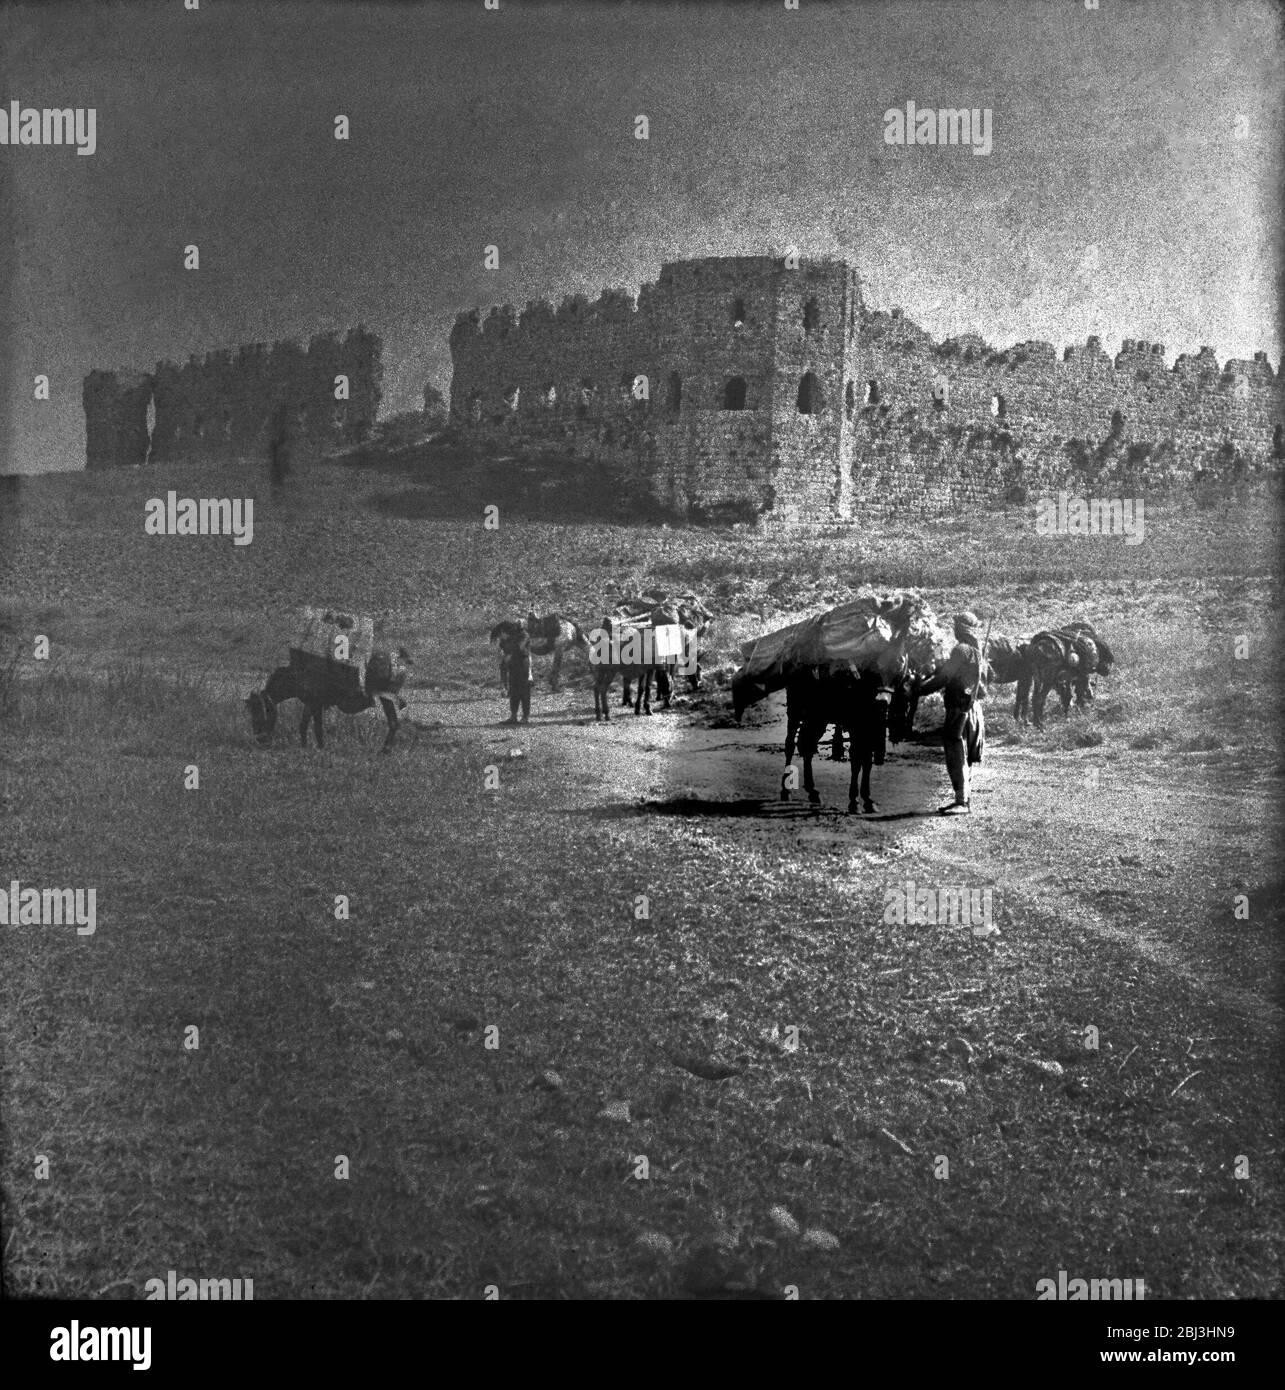 Villes et villages palestiniens du Moyen-Orient vers 1900 de la chrétienté médiévale, y compris les châteaux de Crusader et les pays méditerranéens. Les anciens villages jordaniens, égyptiens et israéliens avant la première Guerre mondiale Banque D'Images